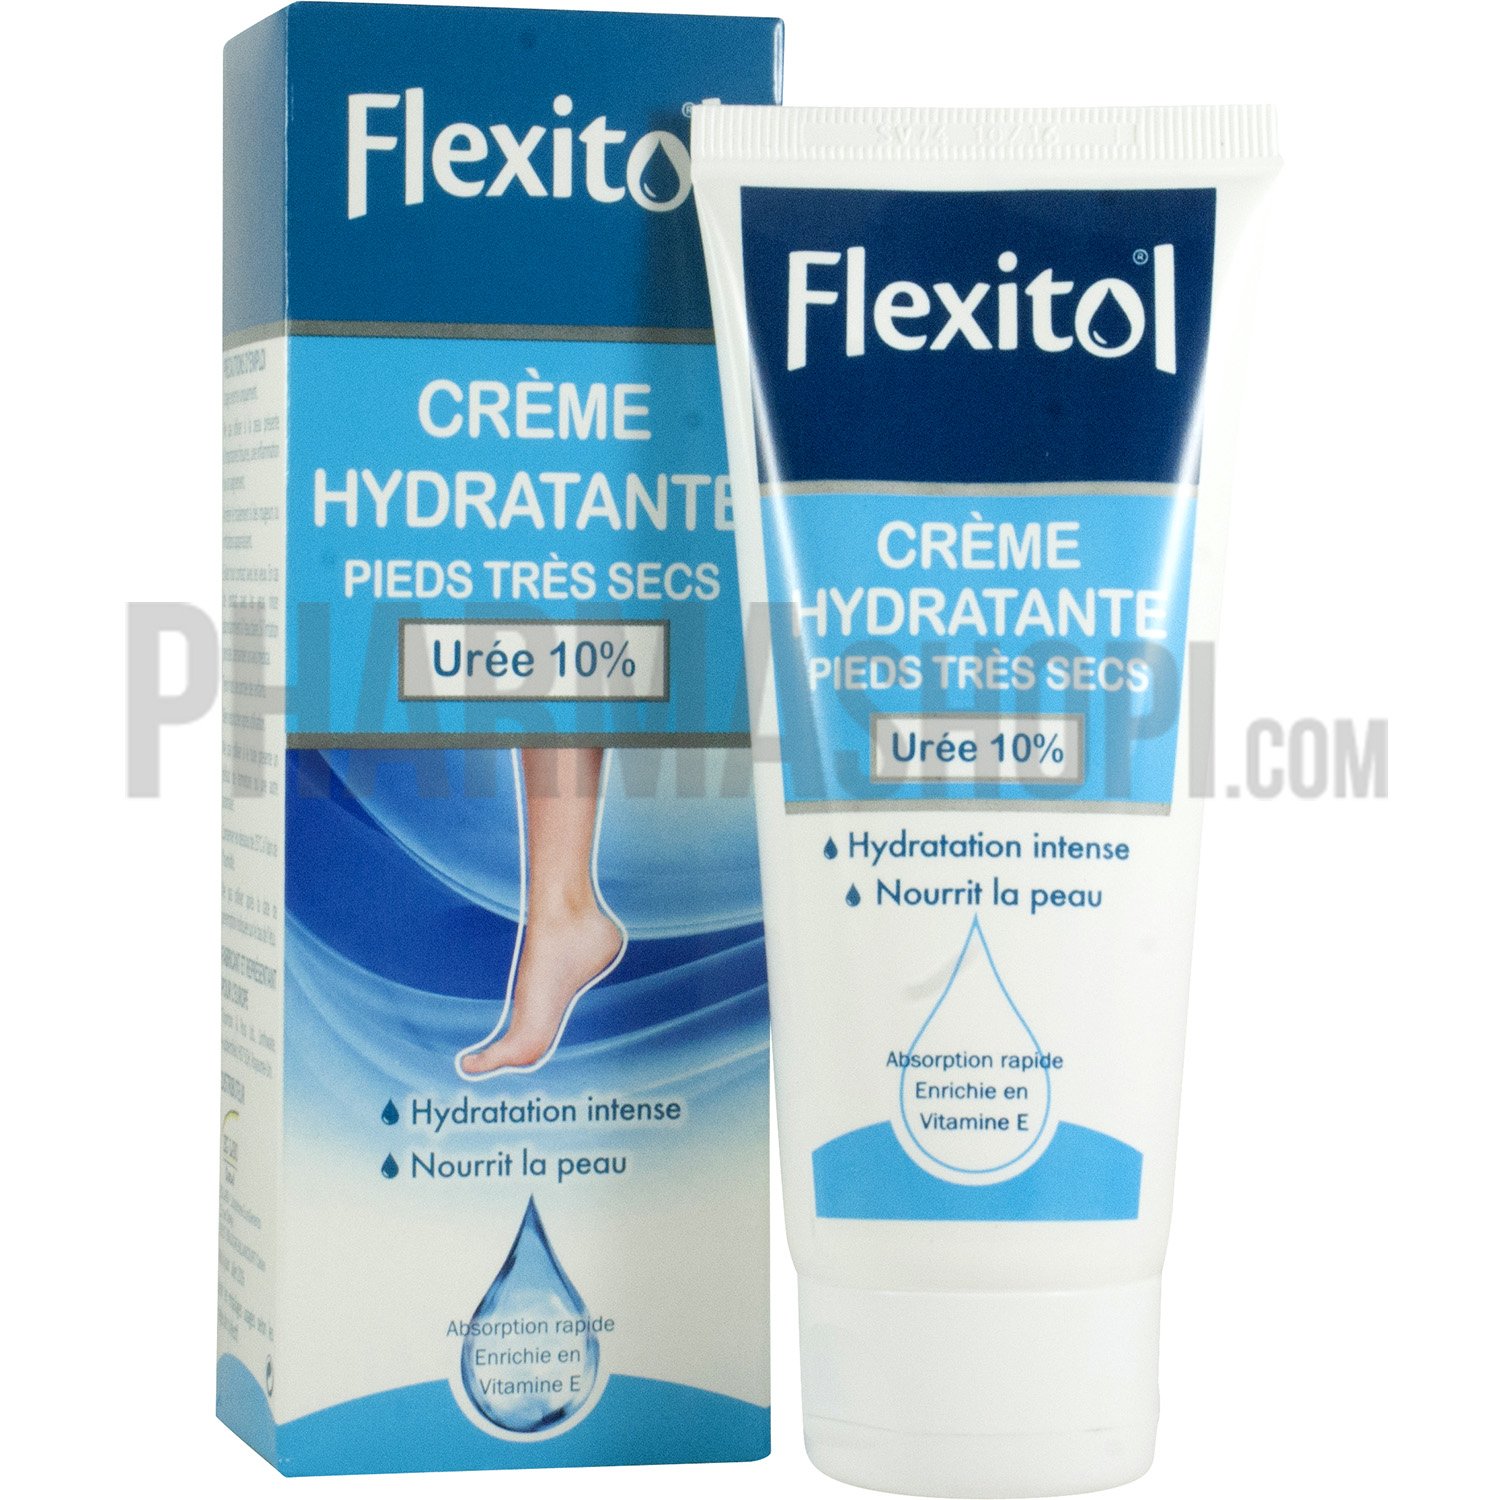 Flexitol crème hydratante pieds très secs - tube de 85 g